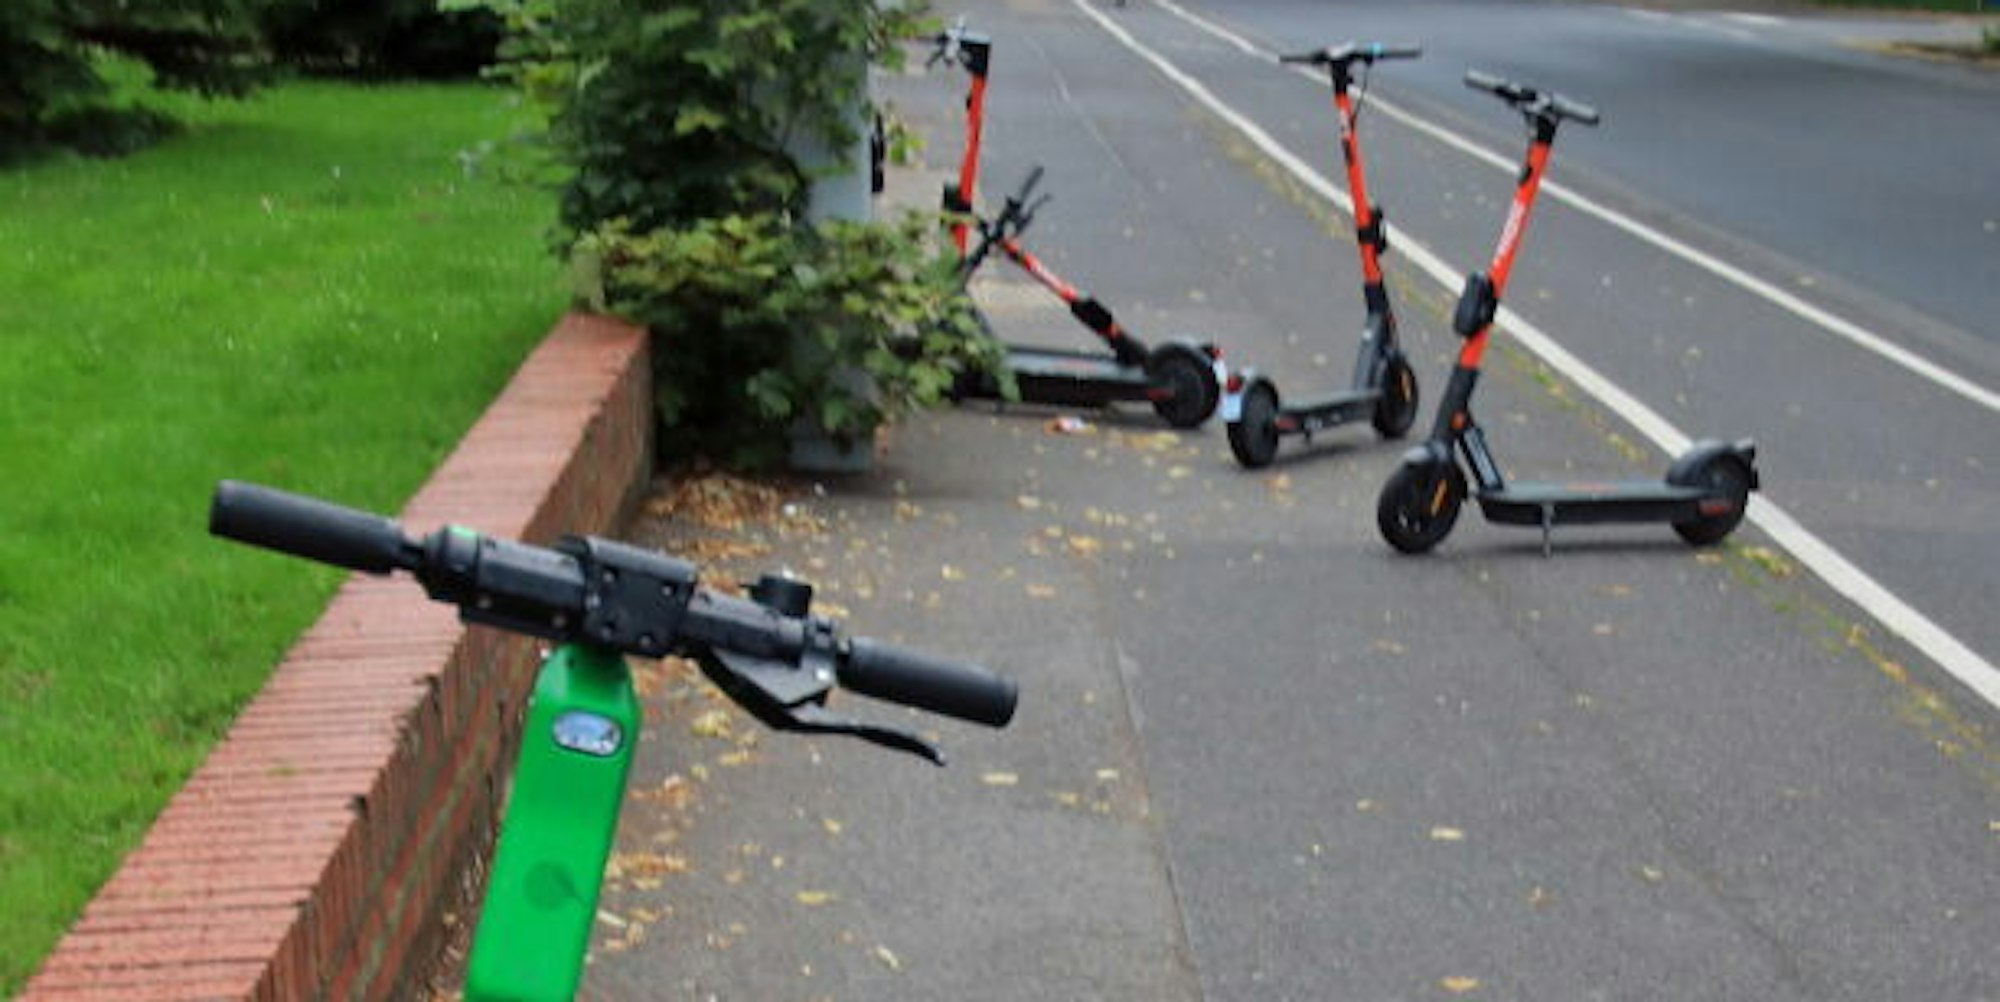 Oft stellen die geparkten E-Scooter ein Hindernis auf dem Bürgersteig oder auf Fahrradwegen dar.